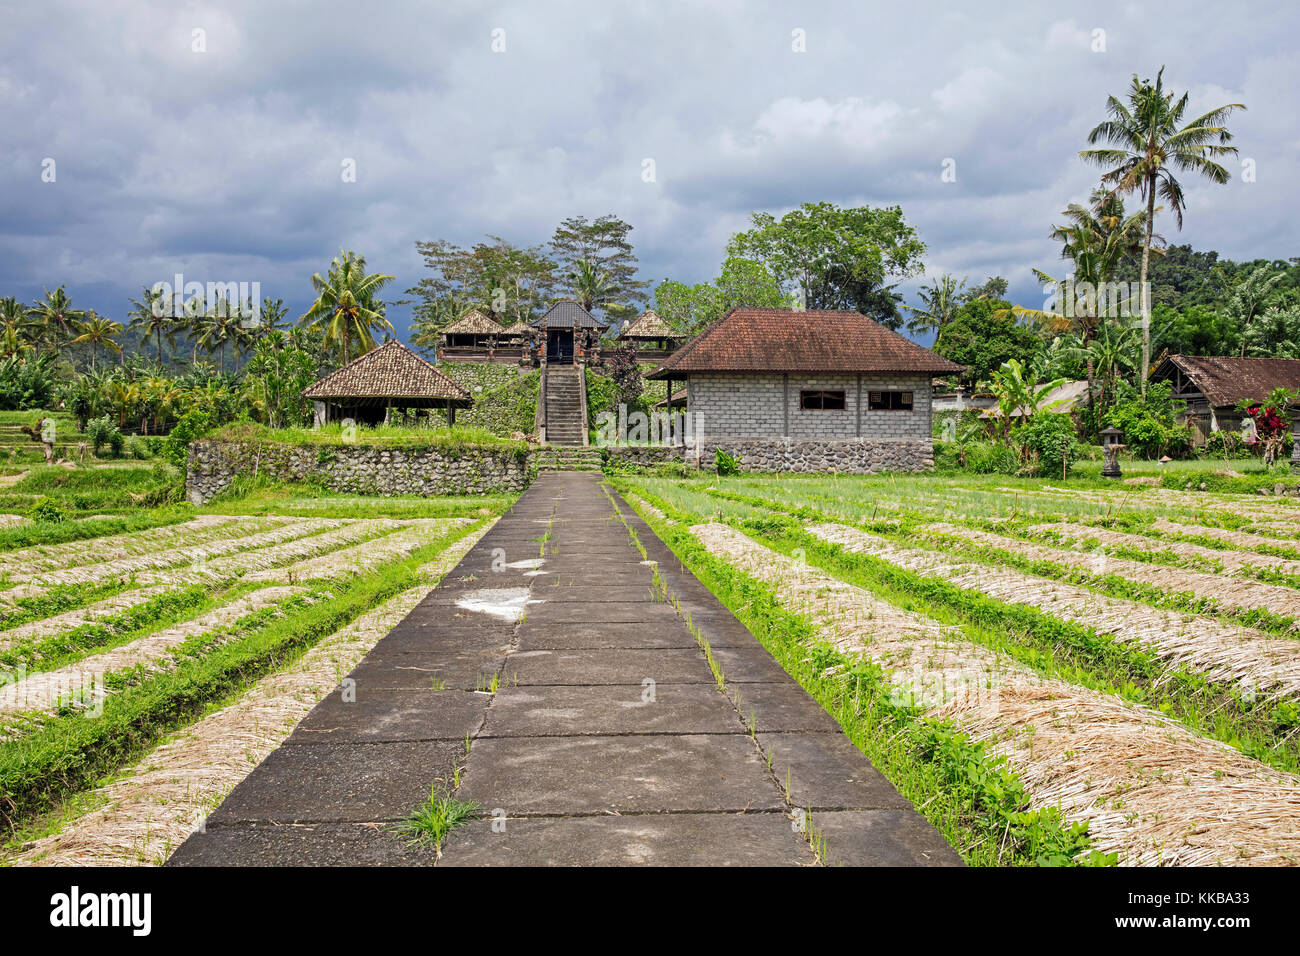 Campo di riso e il piccolo tempio nel villaggio rurale sideman nel karangasem regency, Bali, Indonesia Foto Stock